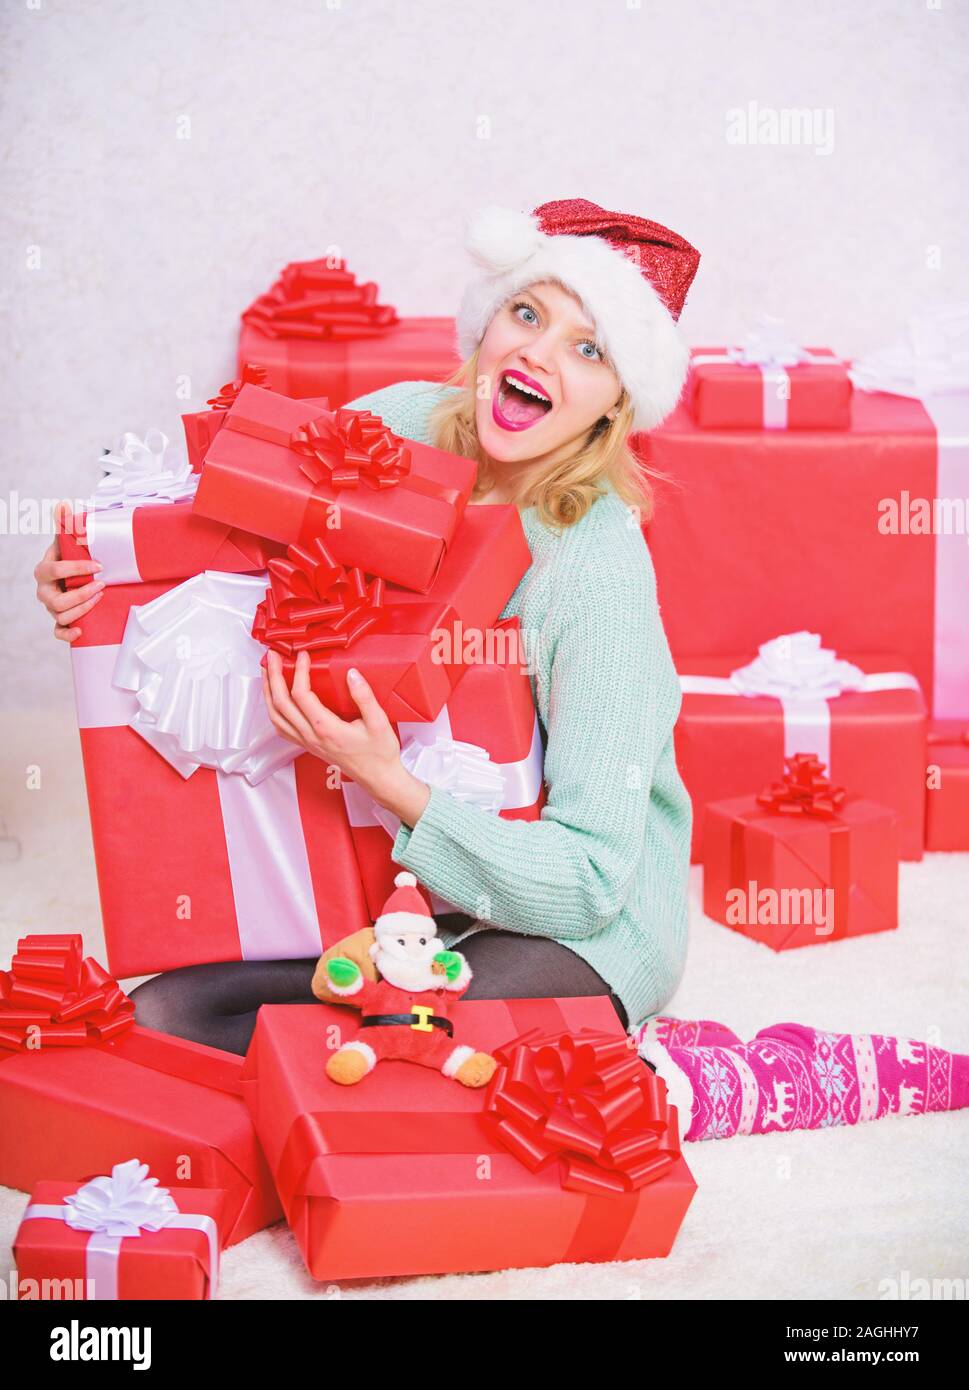 Mujer emocionada rubia mantenga caja de regalo con lazo. El regalo perfecto  para la novia o esposa. Abriendo su regalo de Navidad. Santa traiga su  regalo que siempre quiso Fotografía de stock -